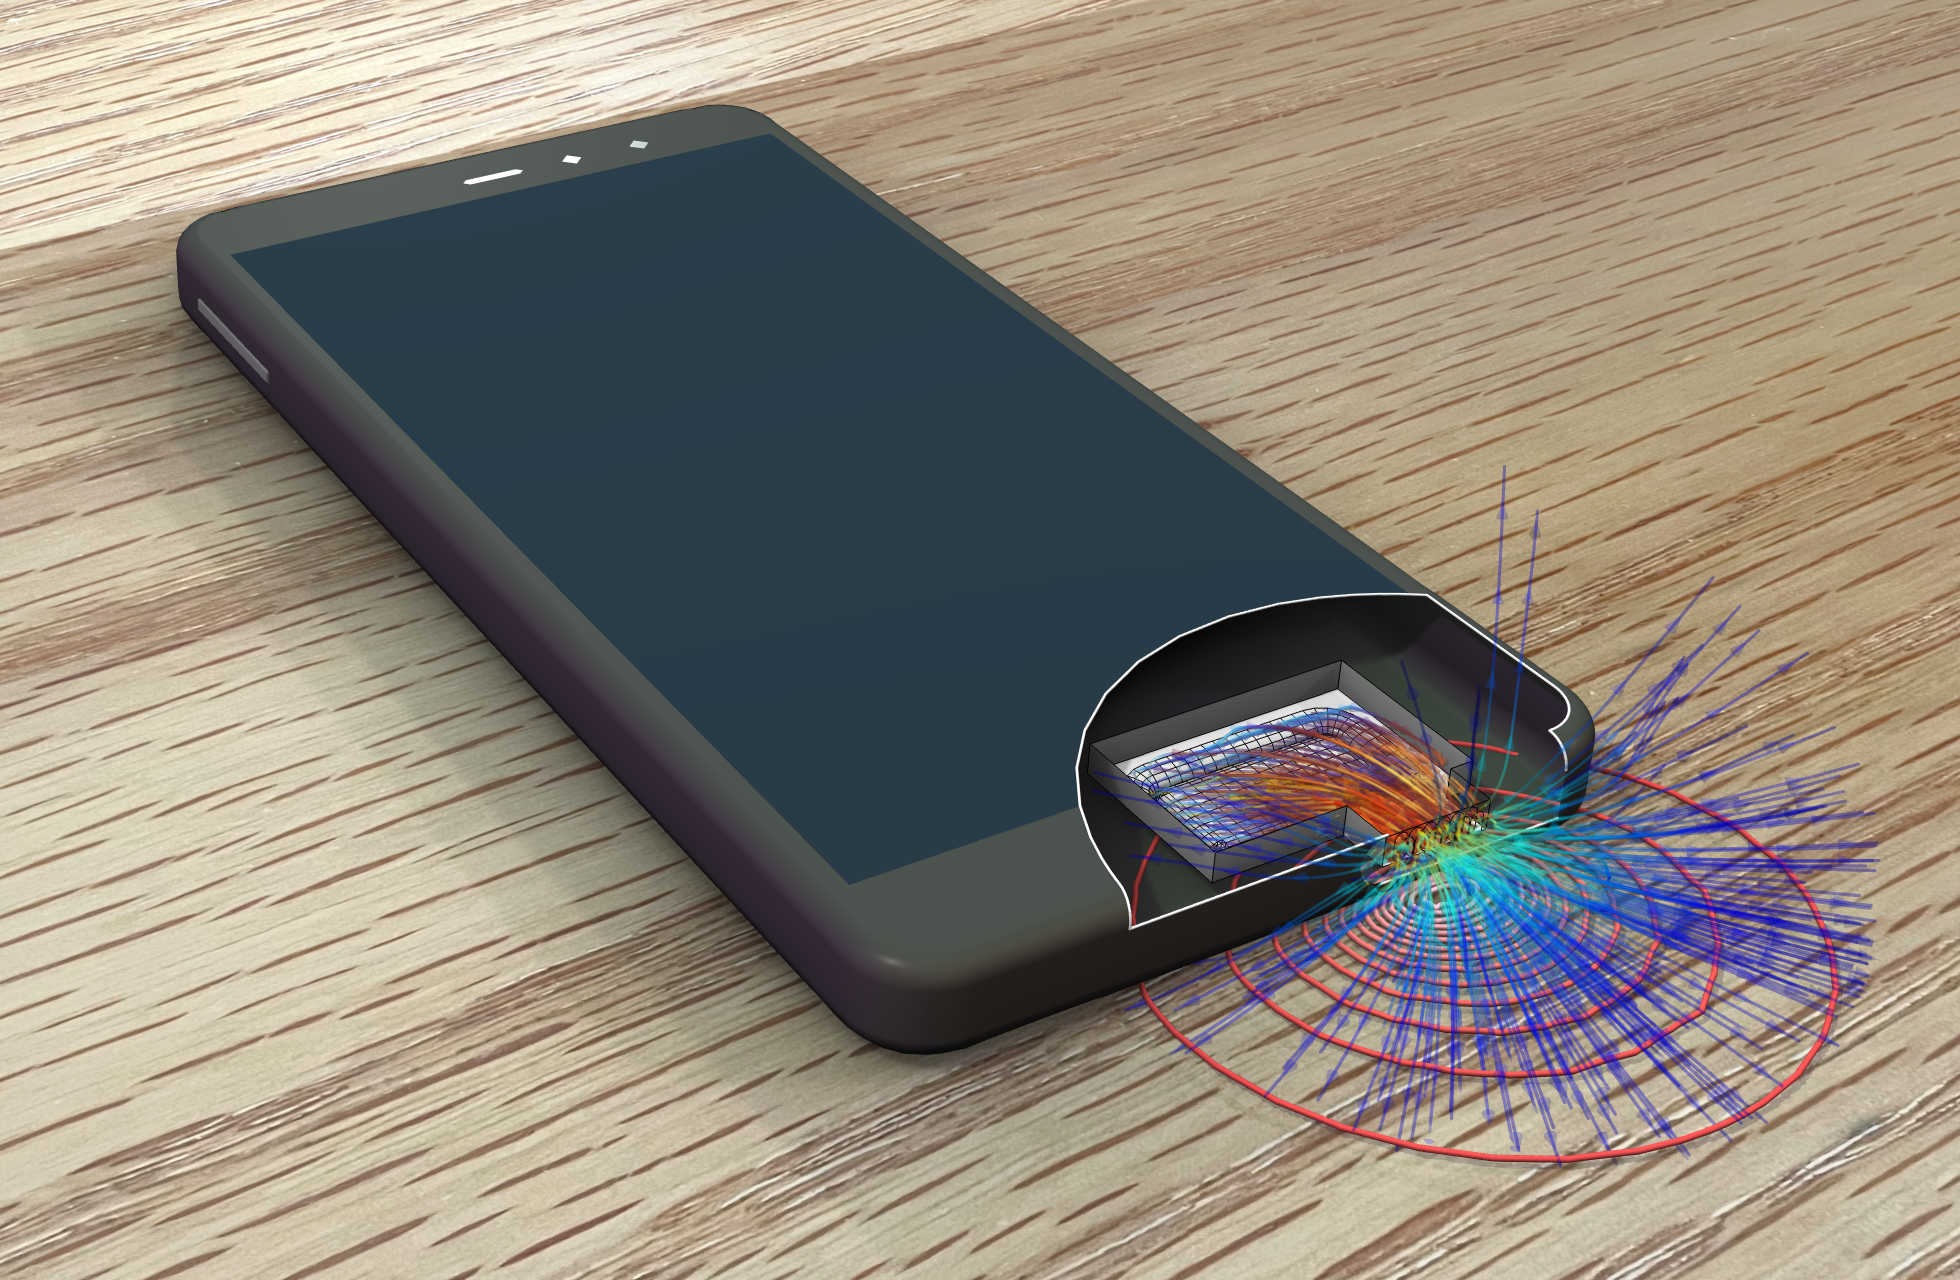 En modell av en smartphone på en bordsskiva visualiserar strålningsintensiteten från mikrohögtalaren.